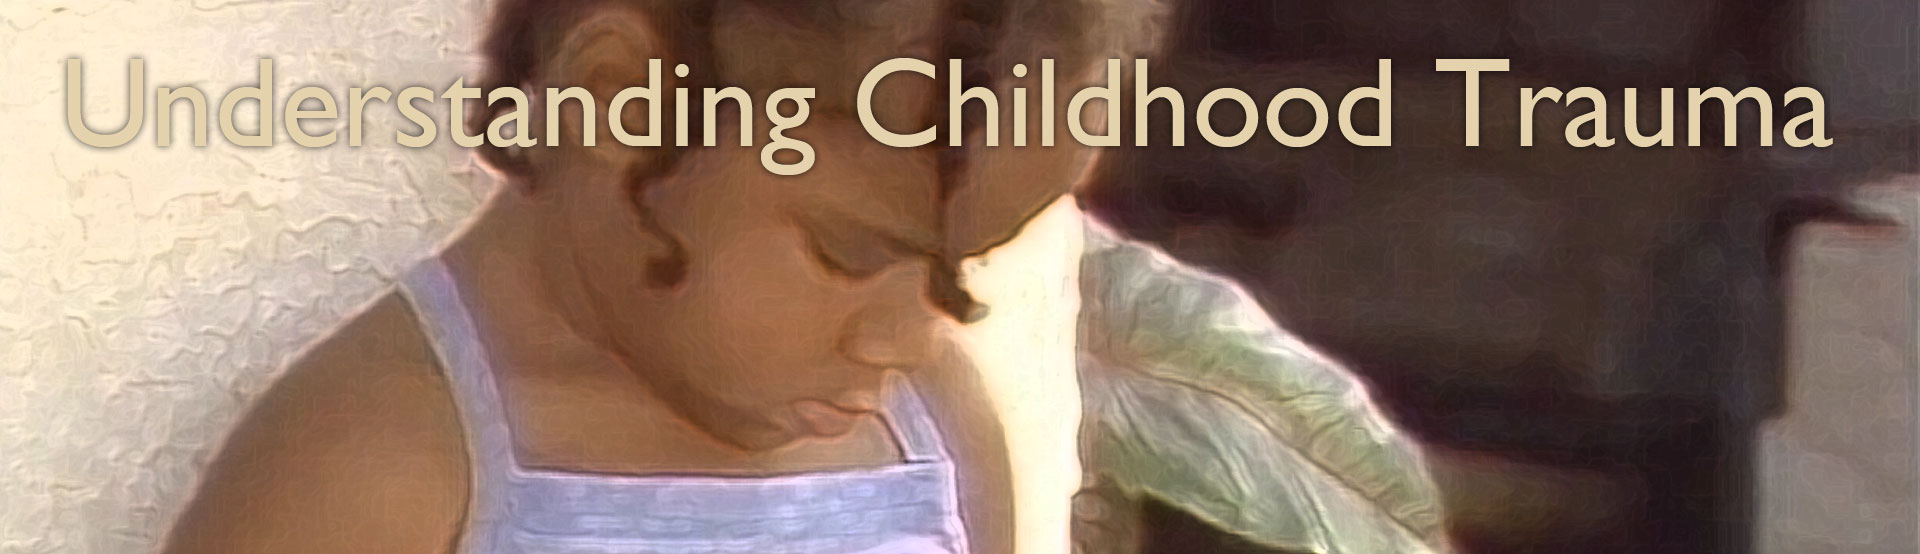 Understanding Childhood Trauma